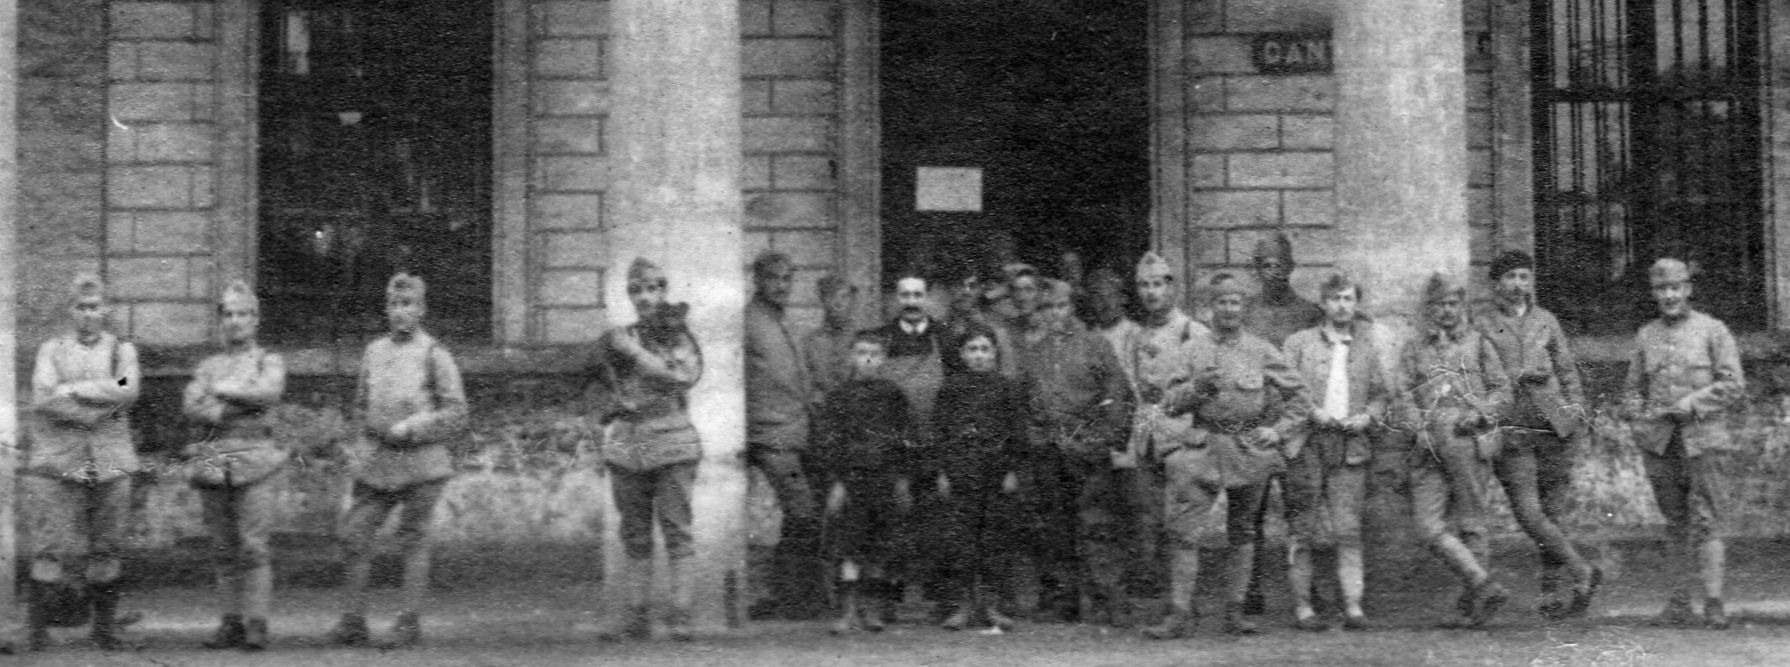 CPA Caserne avec panier devant les militaires.jpg